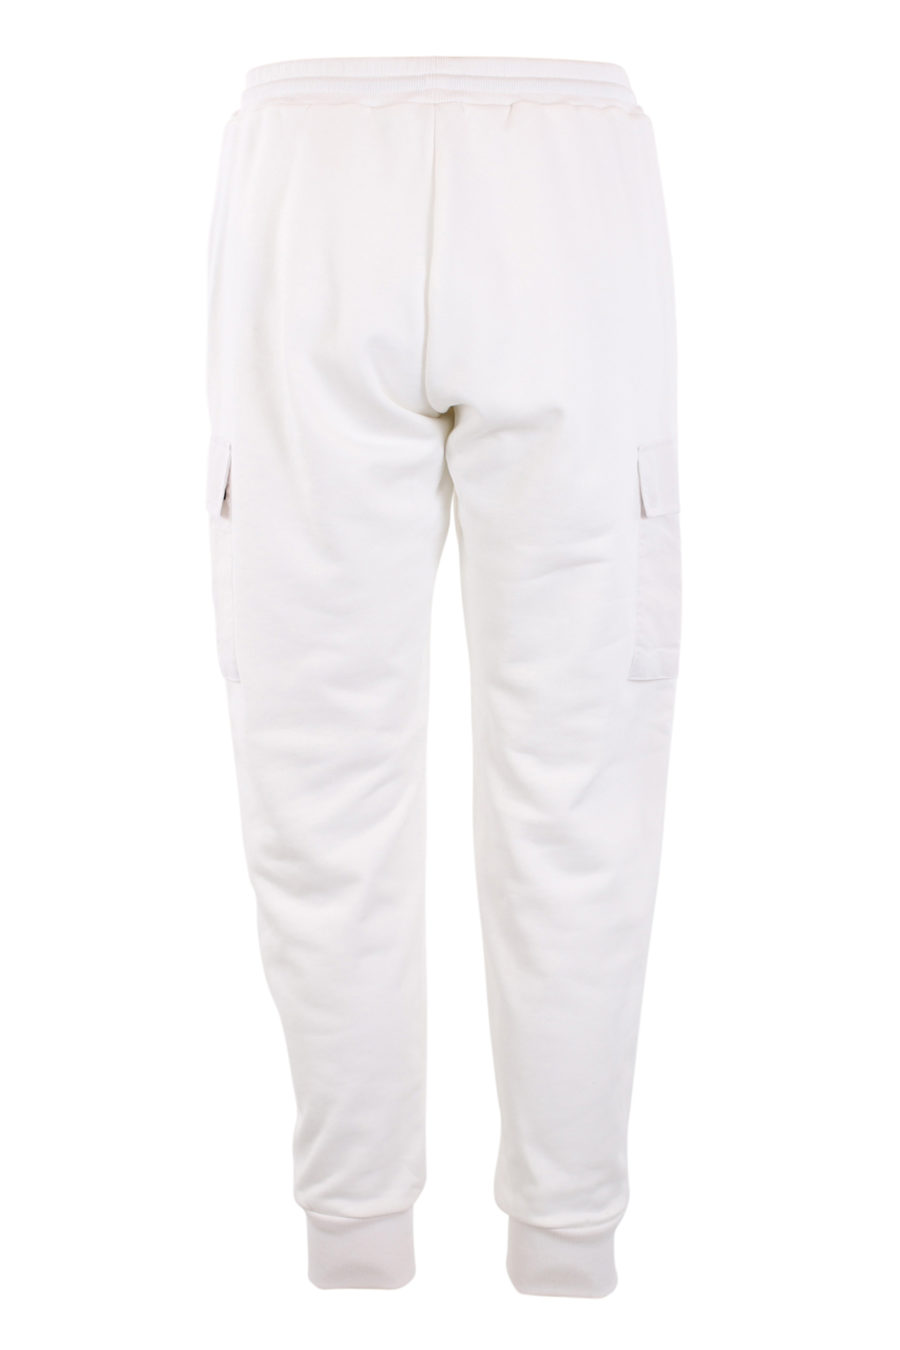 Pantalón de chándal blanco con bolsillos - IMG 0900